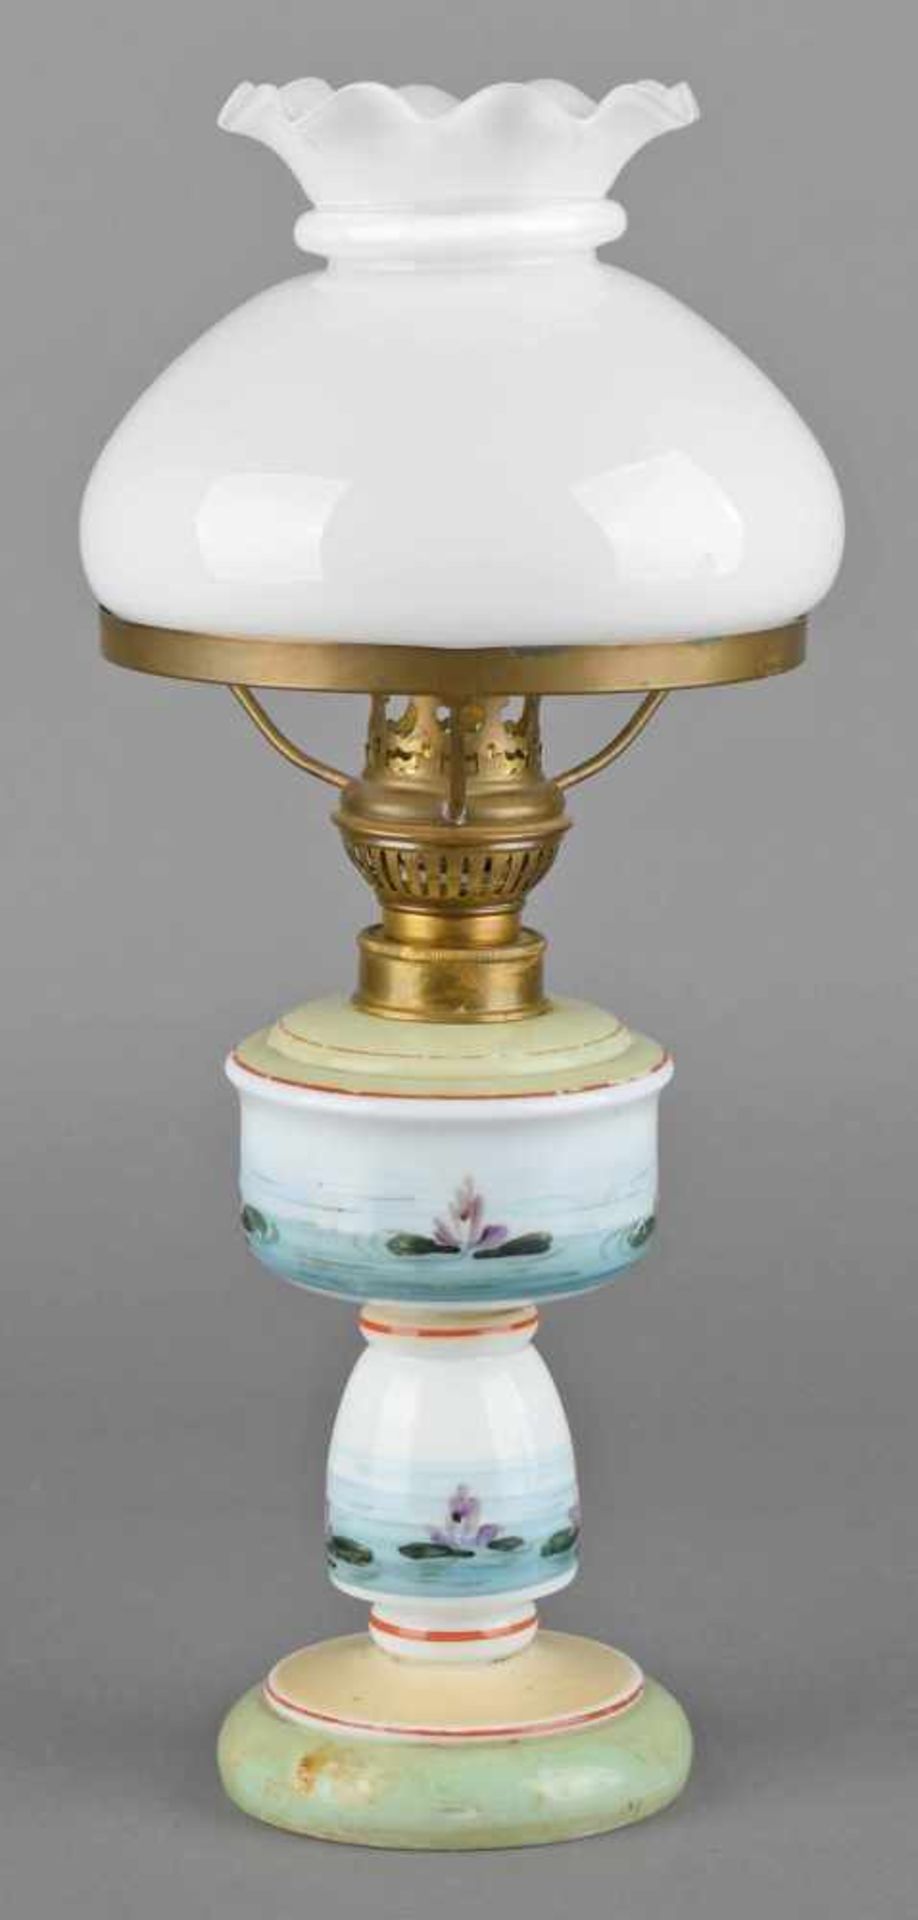 Petroleumlampe profilierter Milchglaskorpus mit farbigem Seerosendekor bzw. Flächen in Hellgrün - Bild 2 aus 2